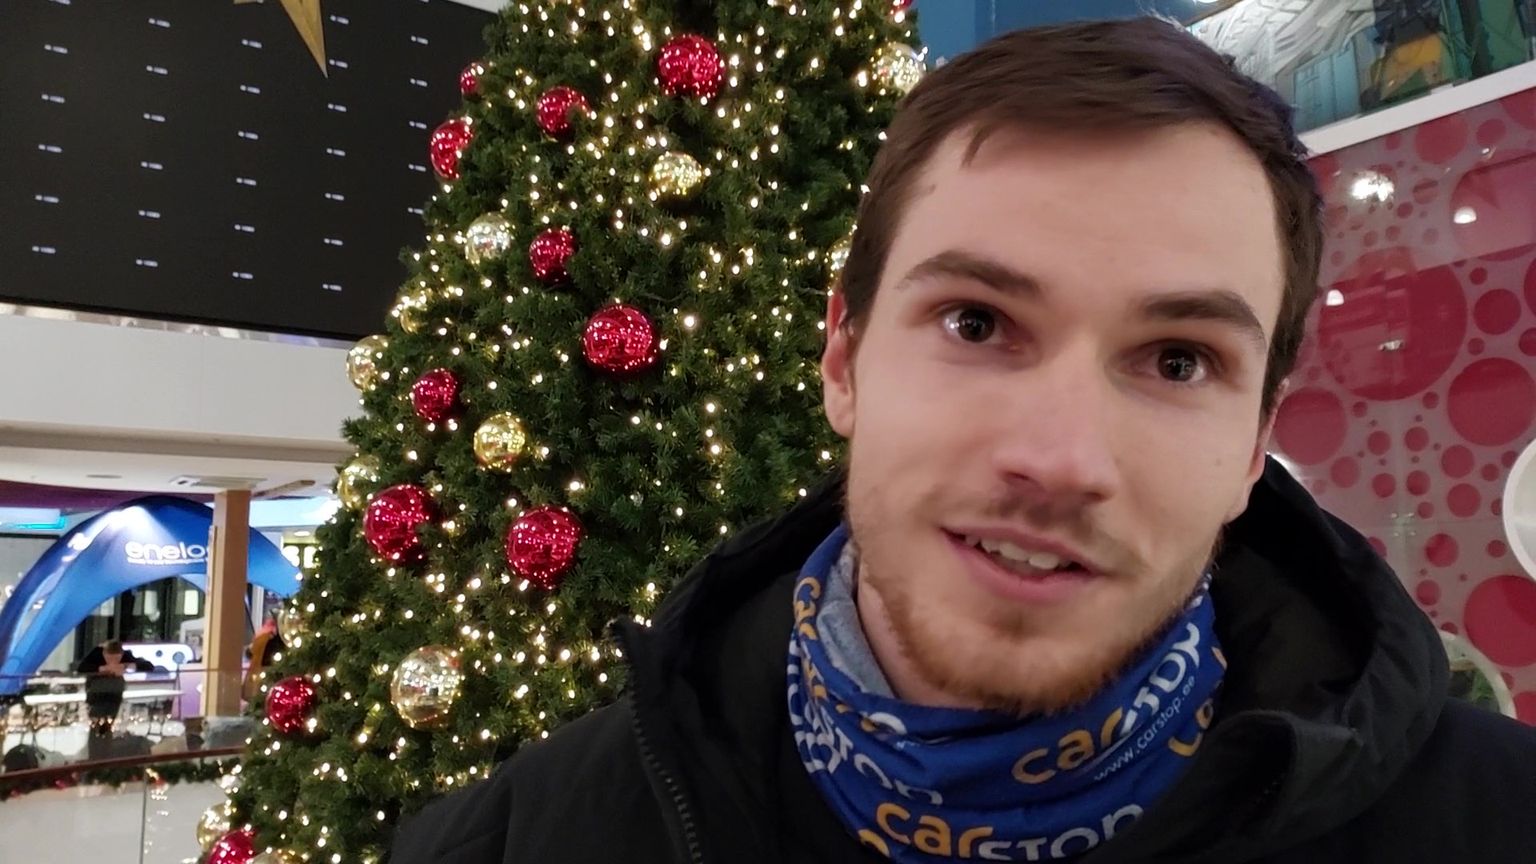 Денис Шалкаускас получил за победу в забеге призовые денежные чеки рядом с рождественской елью в центре "Astri".